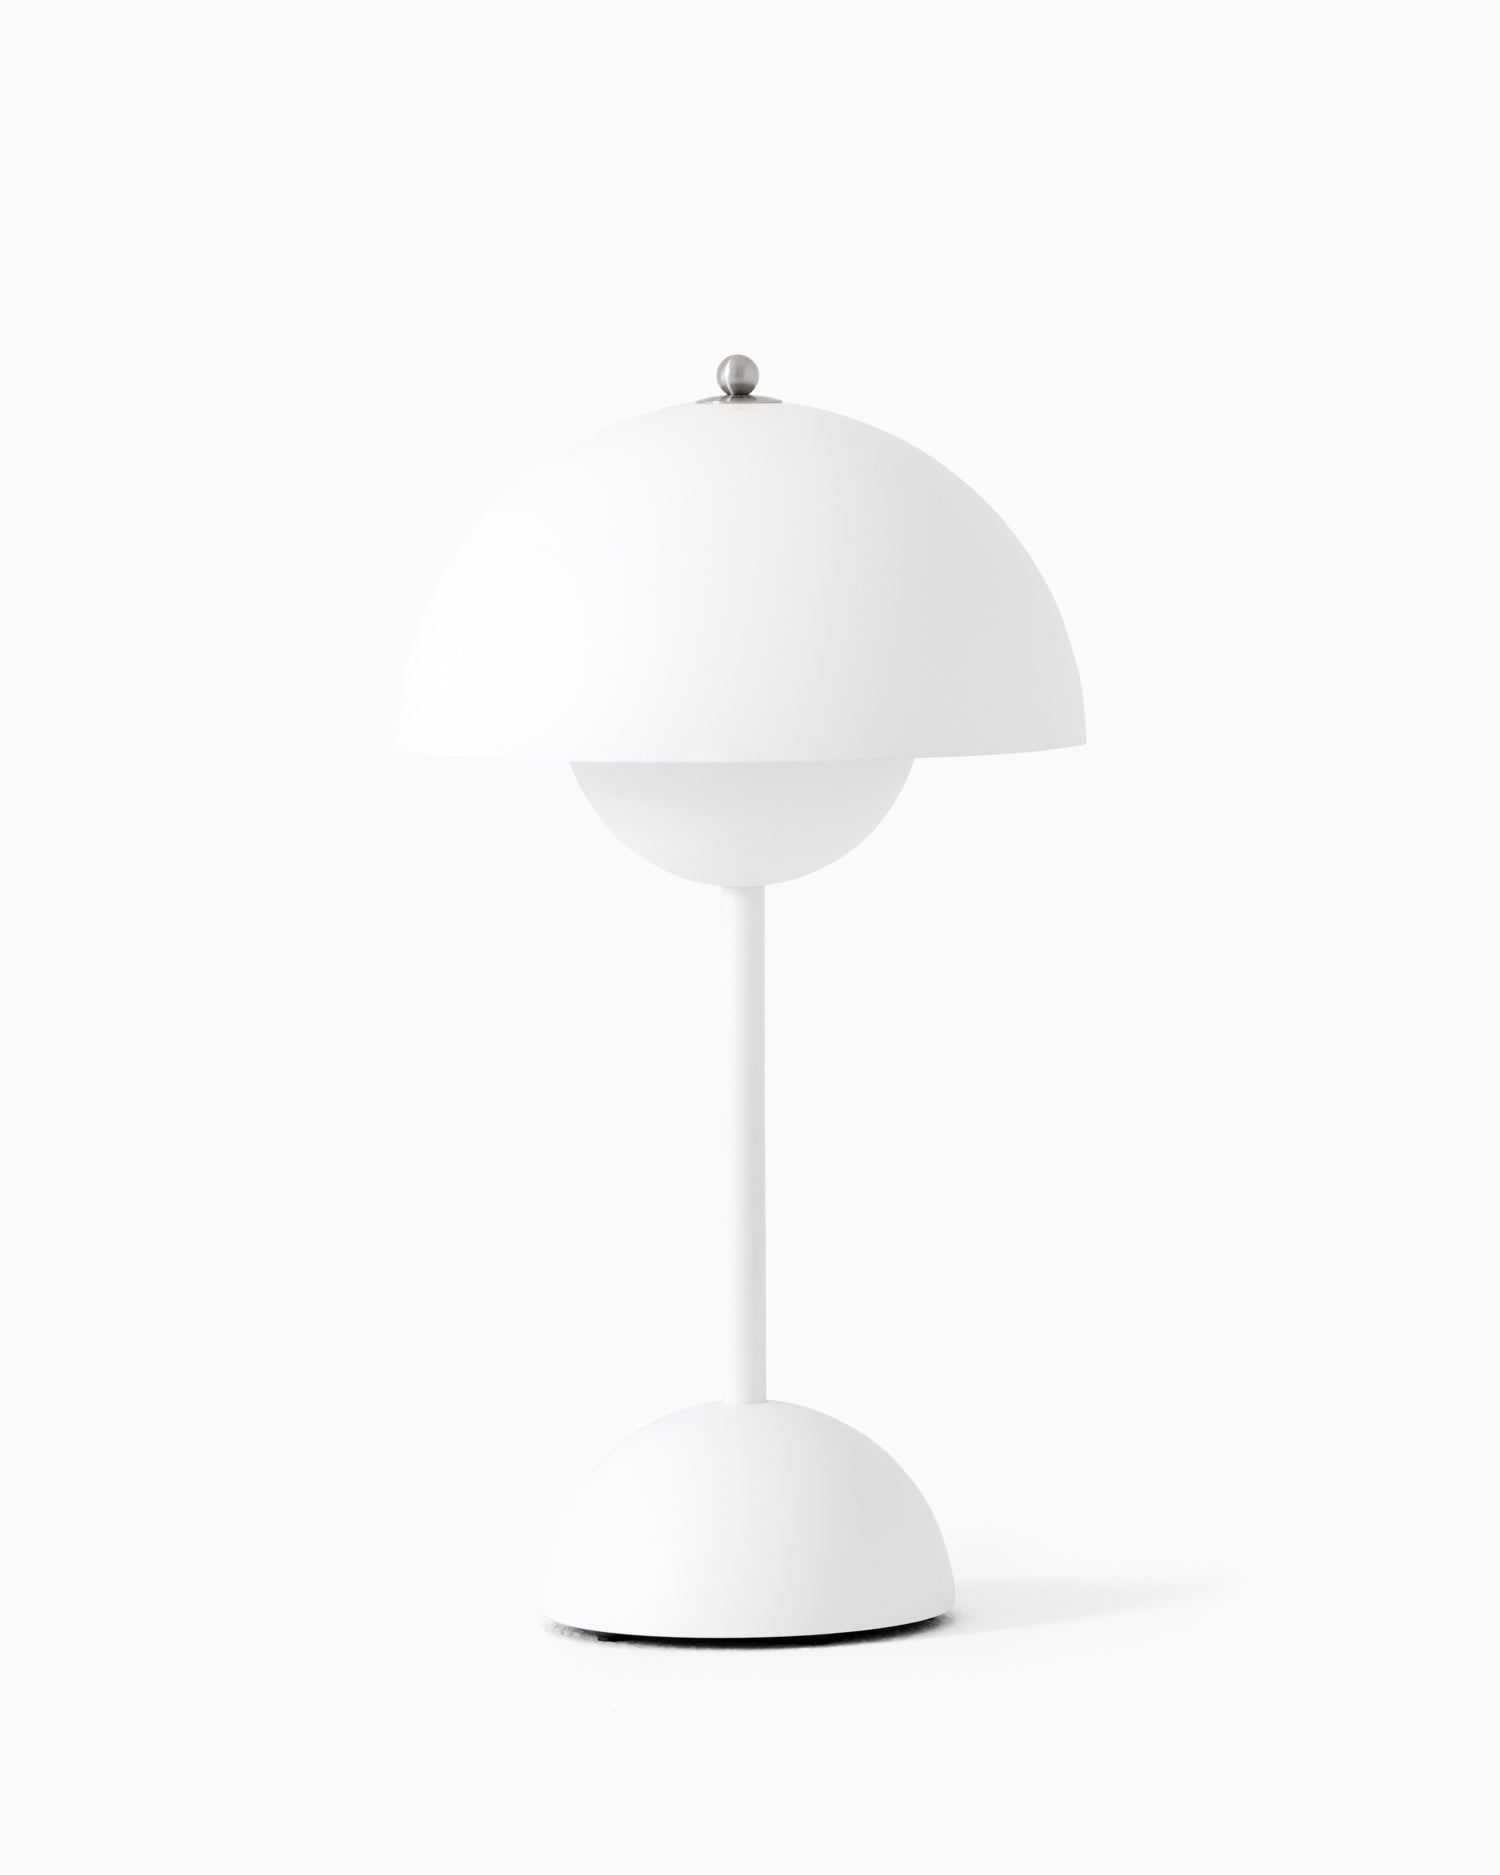 Flowerpot VP9 Portable Table Lamp - Matte White